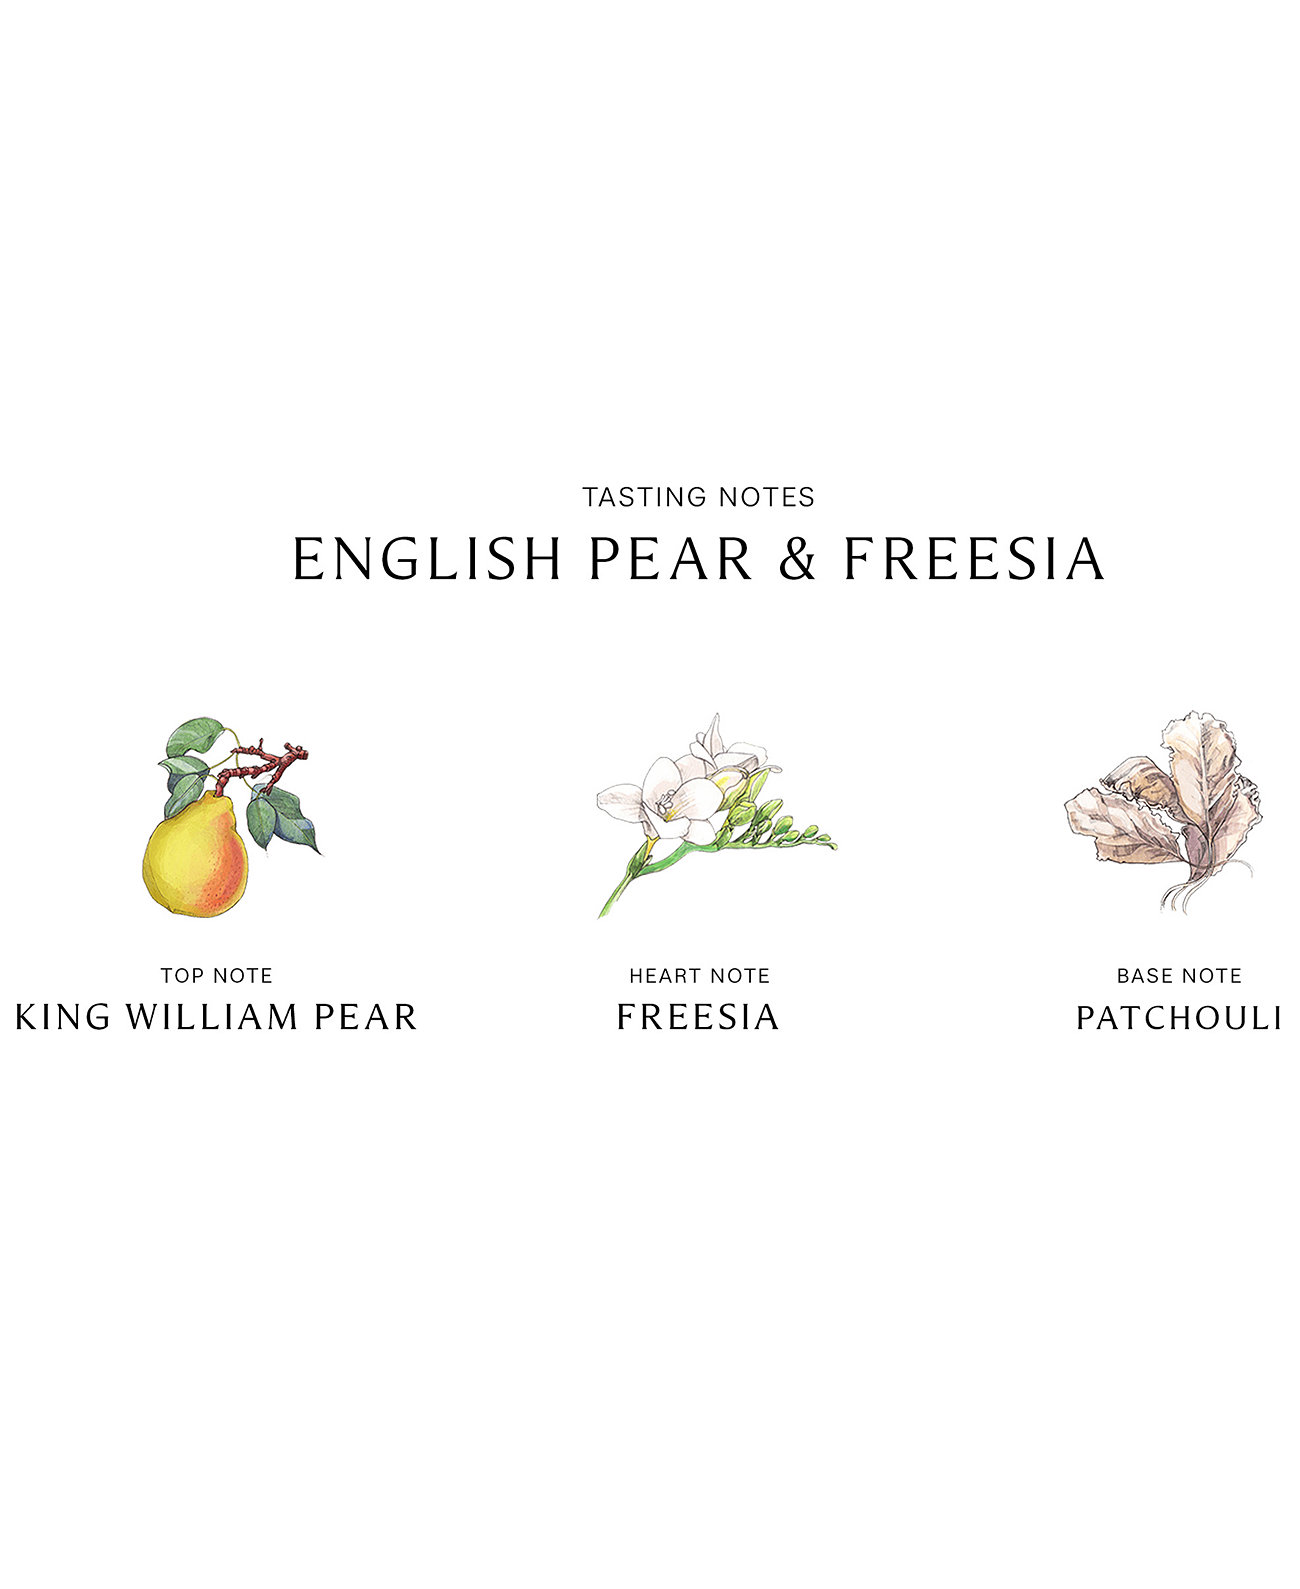 Спрей для комнаты English Pear & Freesia, 3,4 унции. Jo Malone London